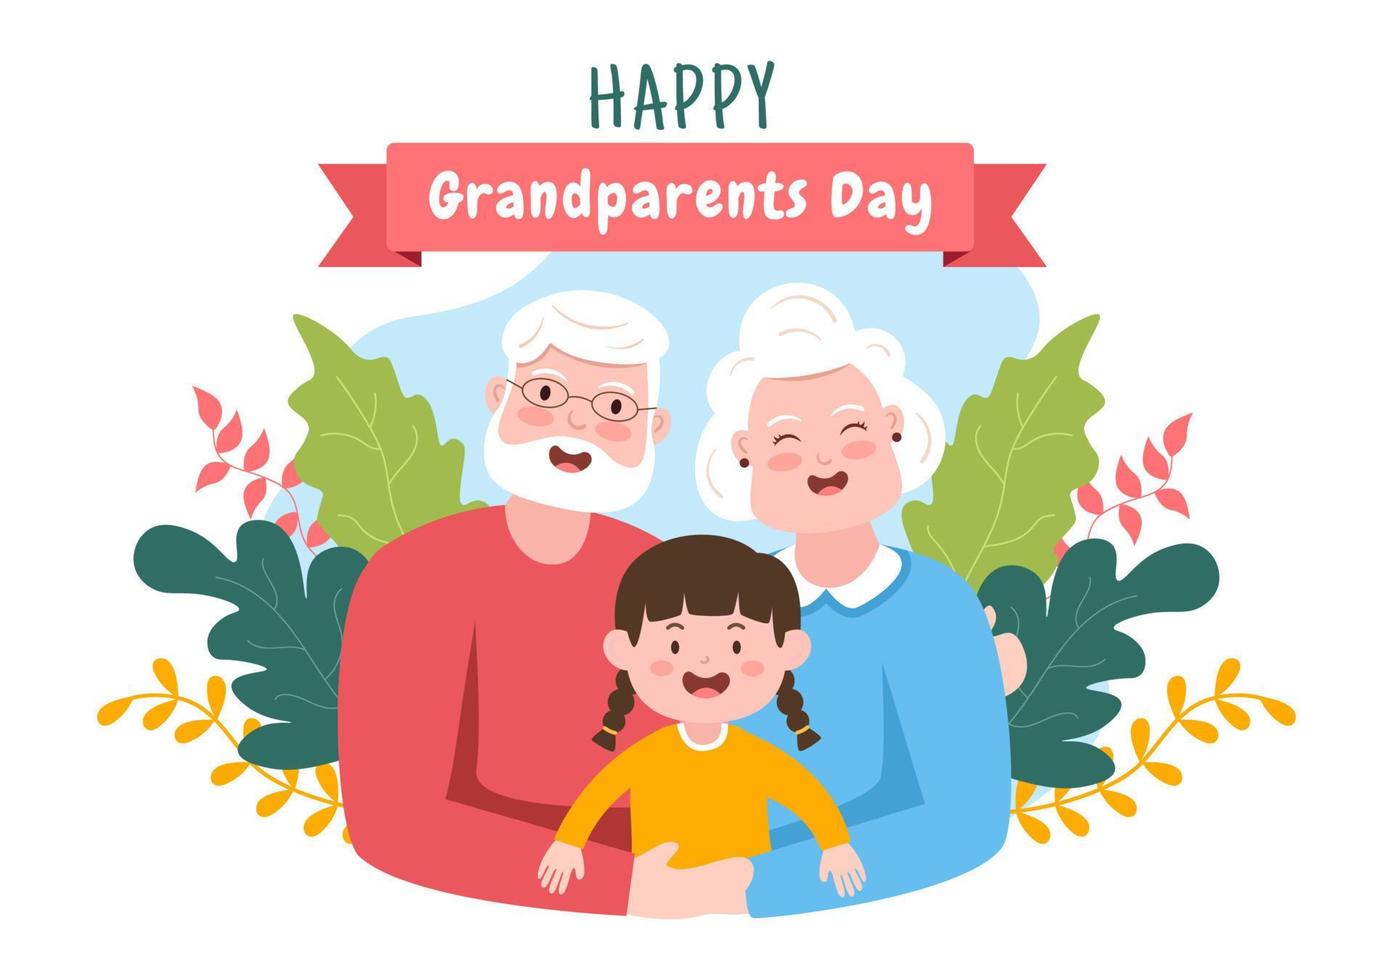 gelukkige grootouders dag schattige cartoon afbeelding met kleinkind, ouder echtpaar, bloemdecoratie, opa en oma in vlakke stijl voor poster of wenskaart vector